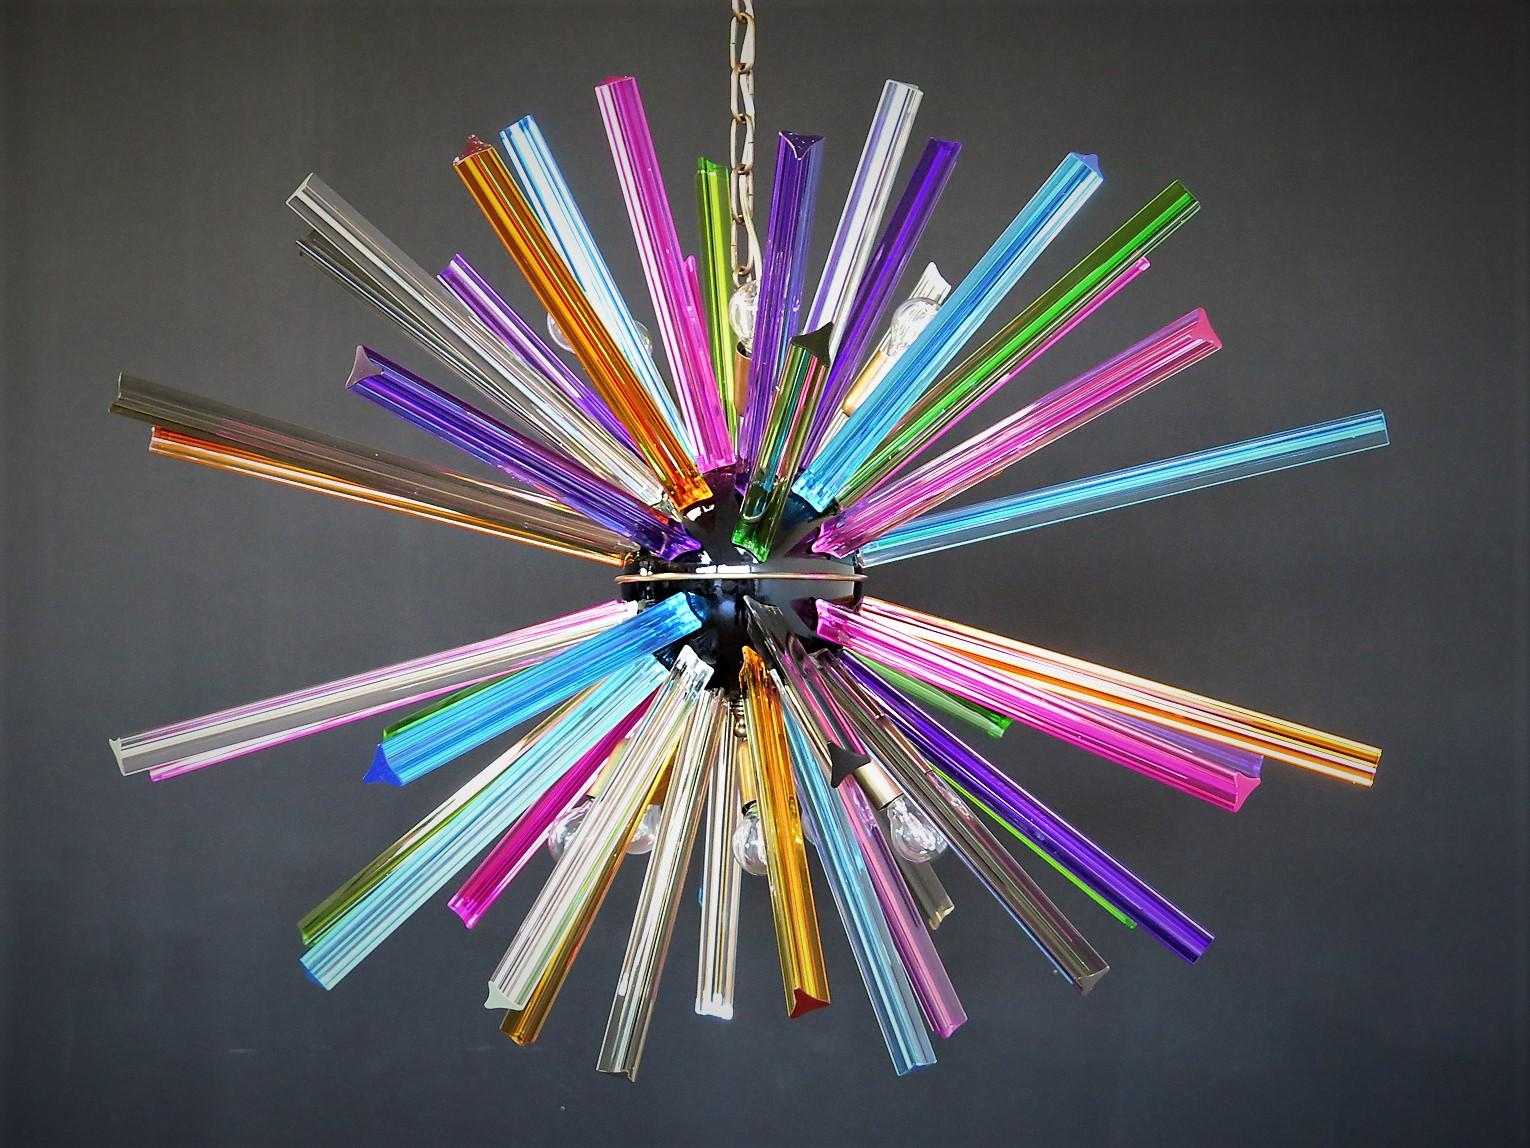 Lustre Spoutnik entourant 50 prismes «triedri » en verre de cristal multicolore rayonnant à partir d'un nucle central en métal noir. Support de lampe en laiton.
Période : fin du XXe siècle
Dimensions : 130 cm de hauteur avec chaîne ; 70 cm de